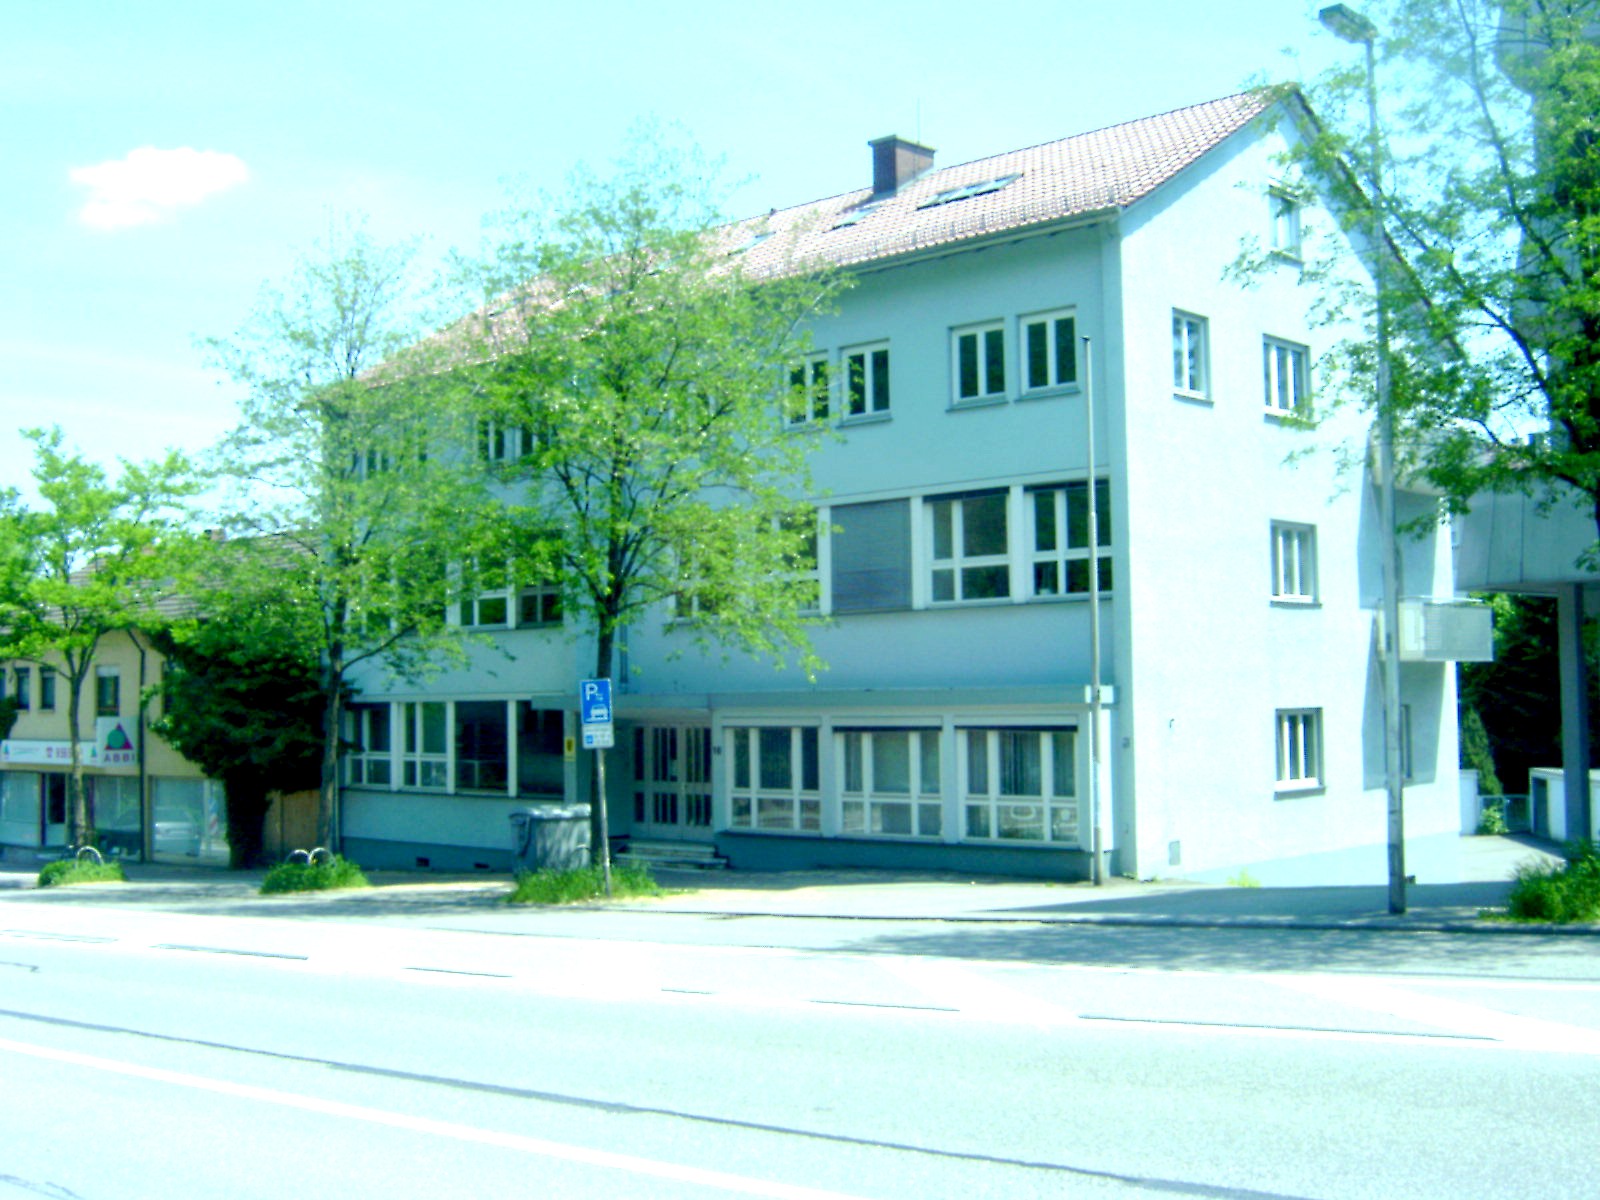 Foto Gerichtsgebäude Dammstrasse 16